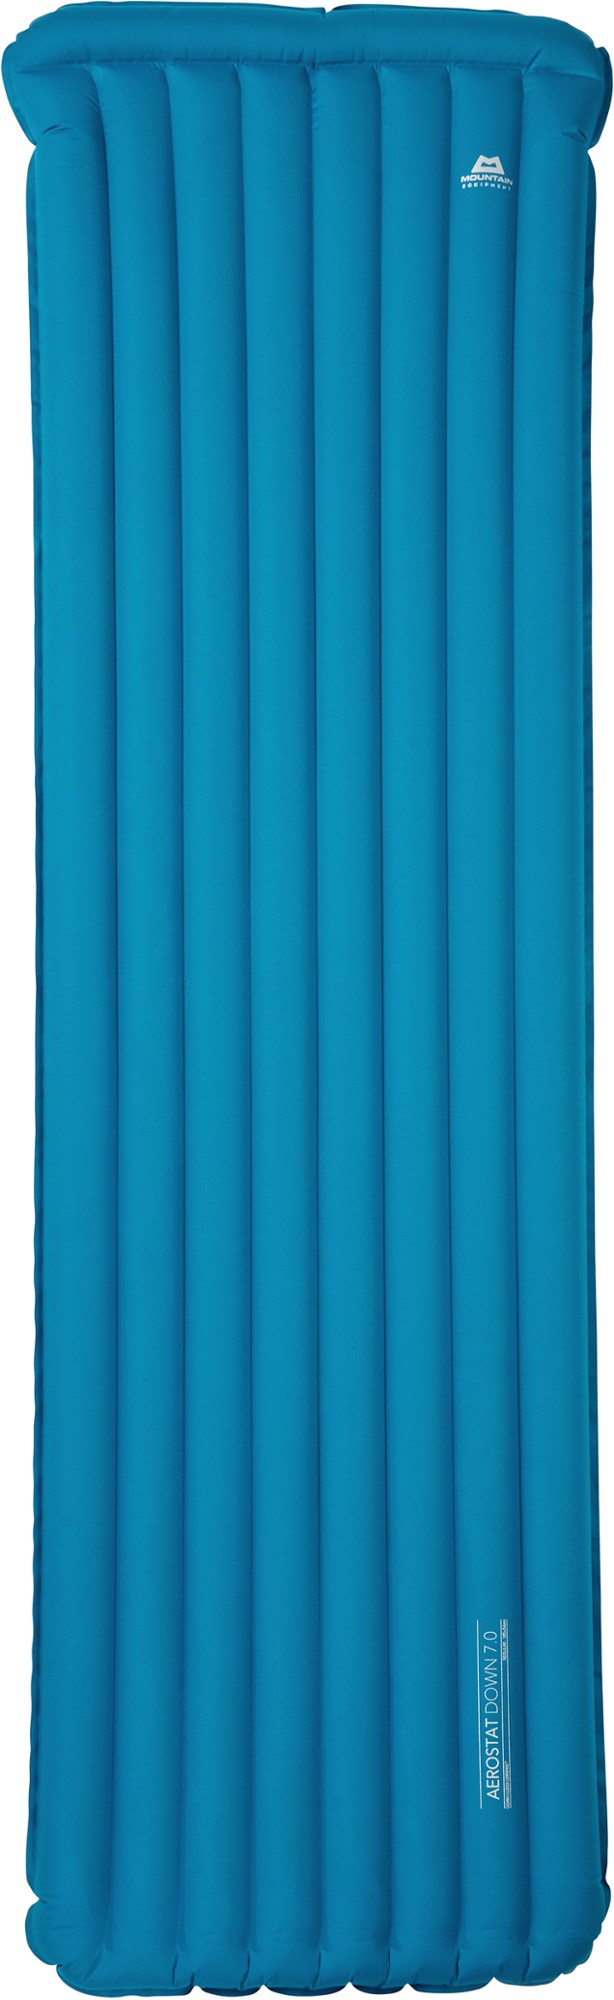 Спальный коврик Aerostat Down 7.0 Mountain Equipment, синий